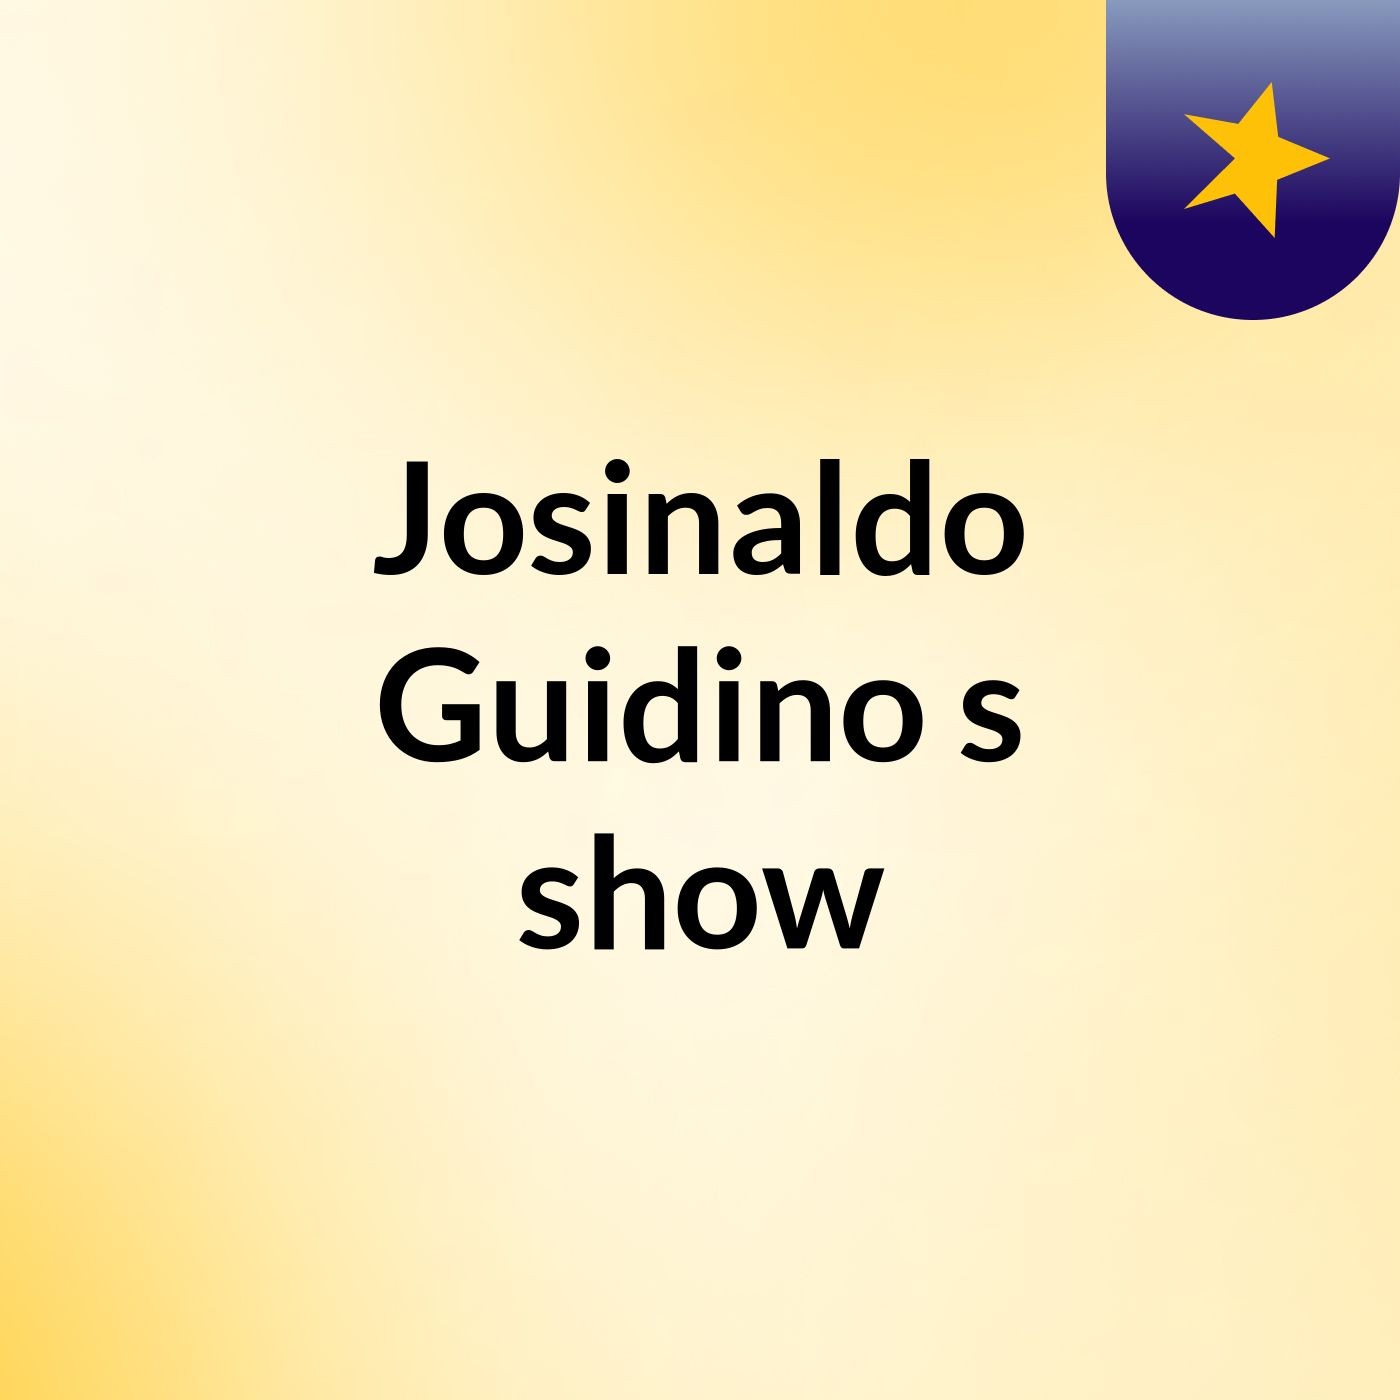 Josinaldo Guidino's show